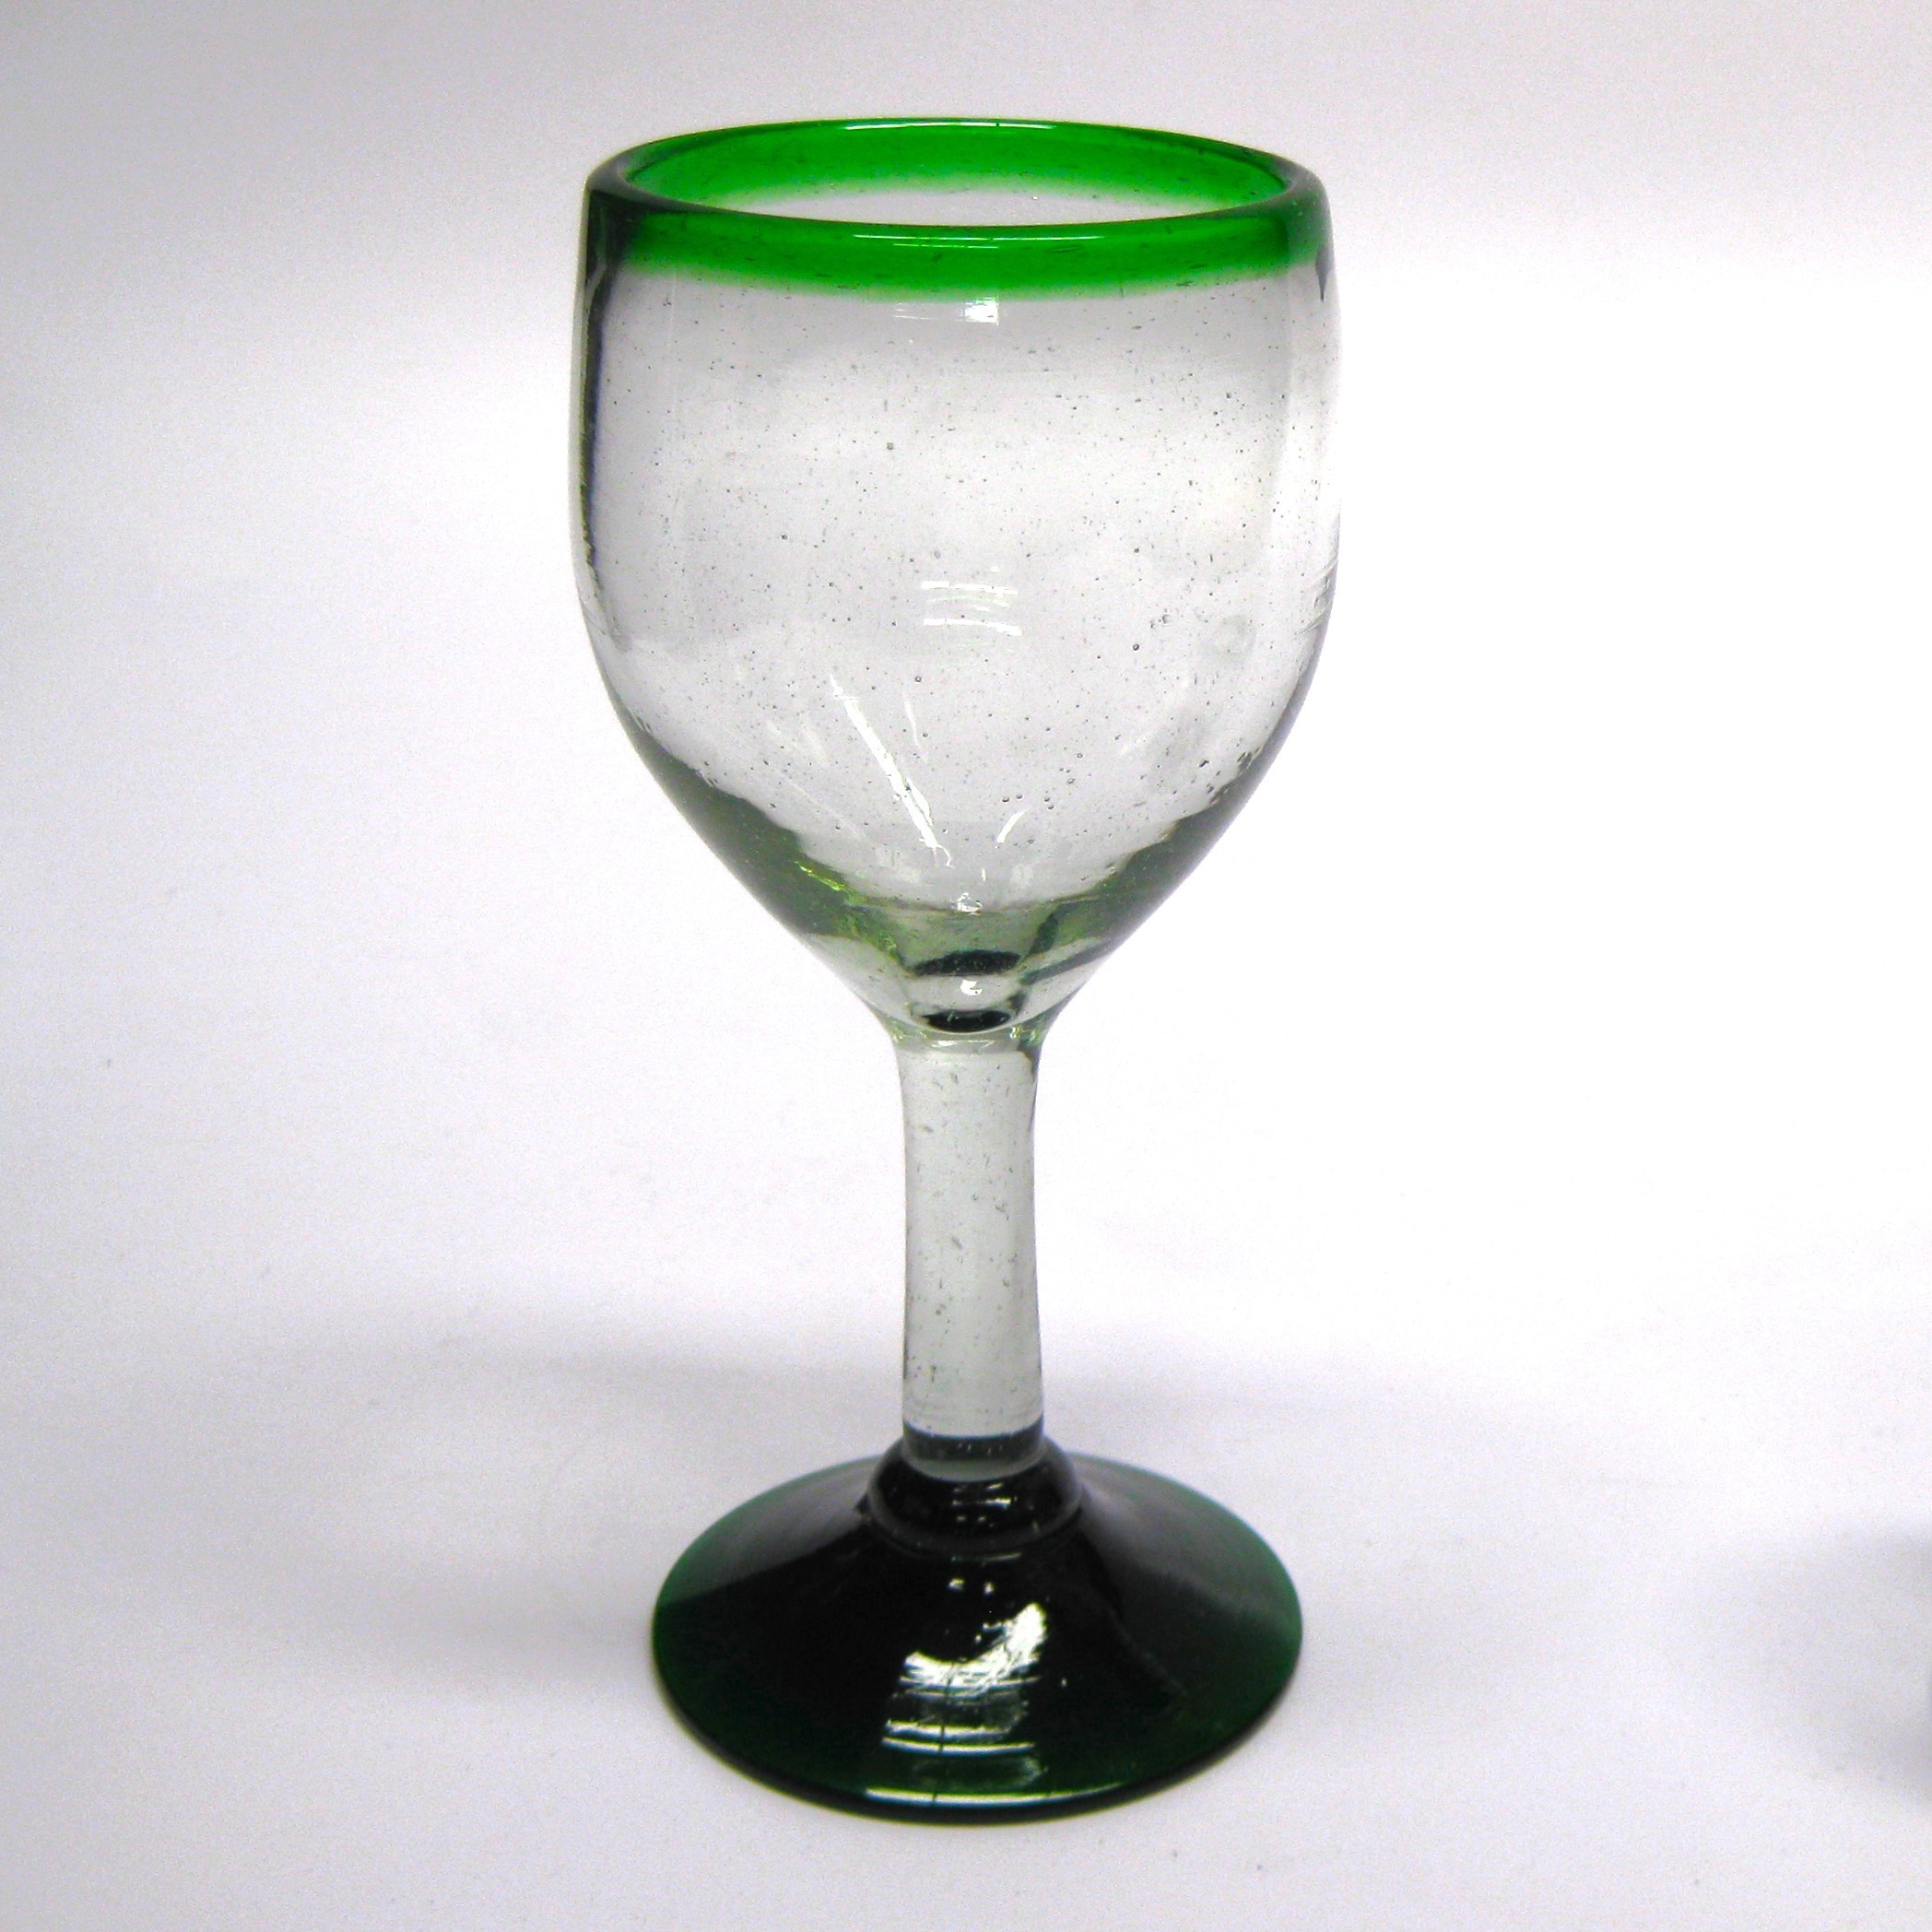 Emerald Green Rim 7 oz Small Wine Glasses 